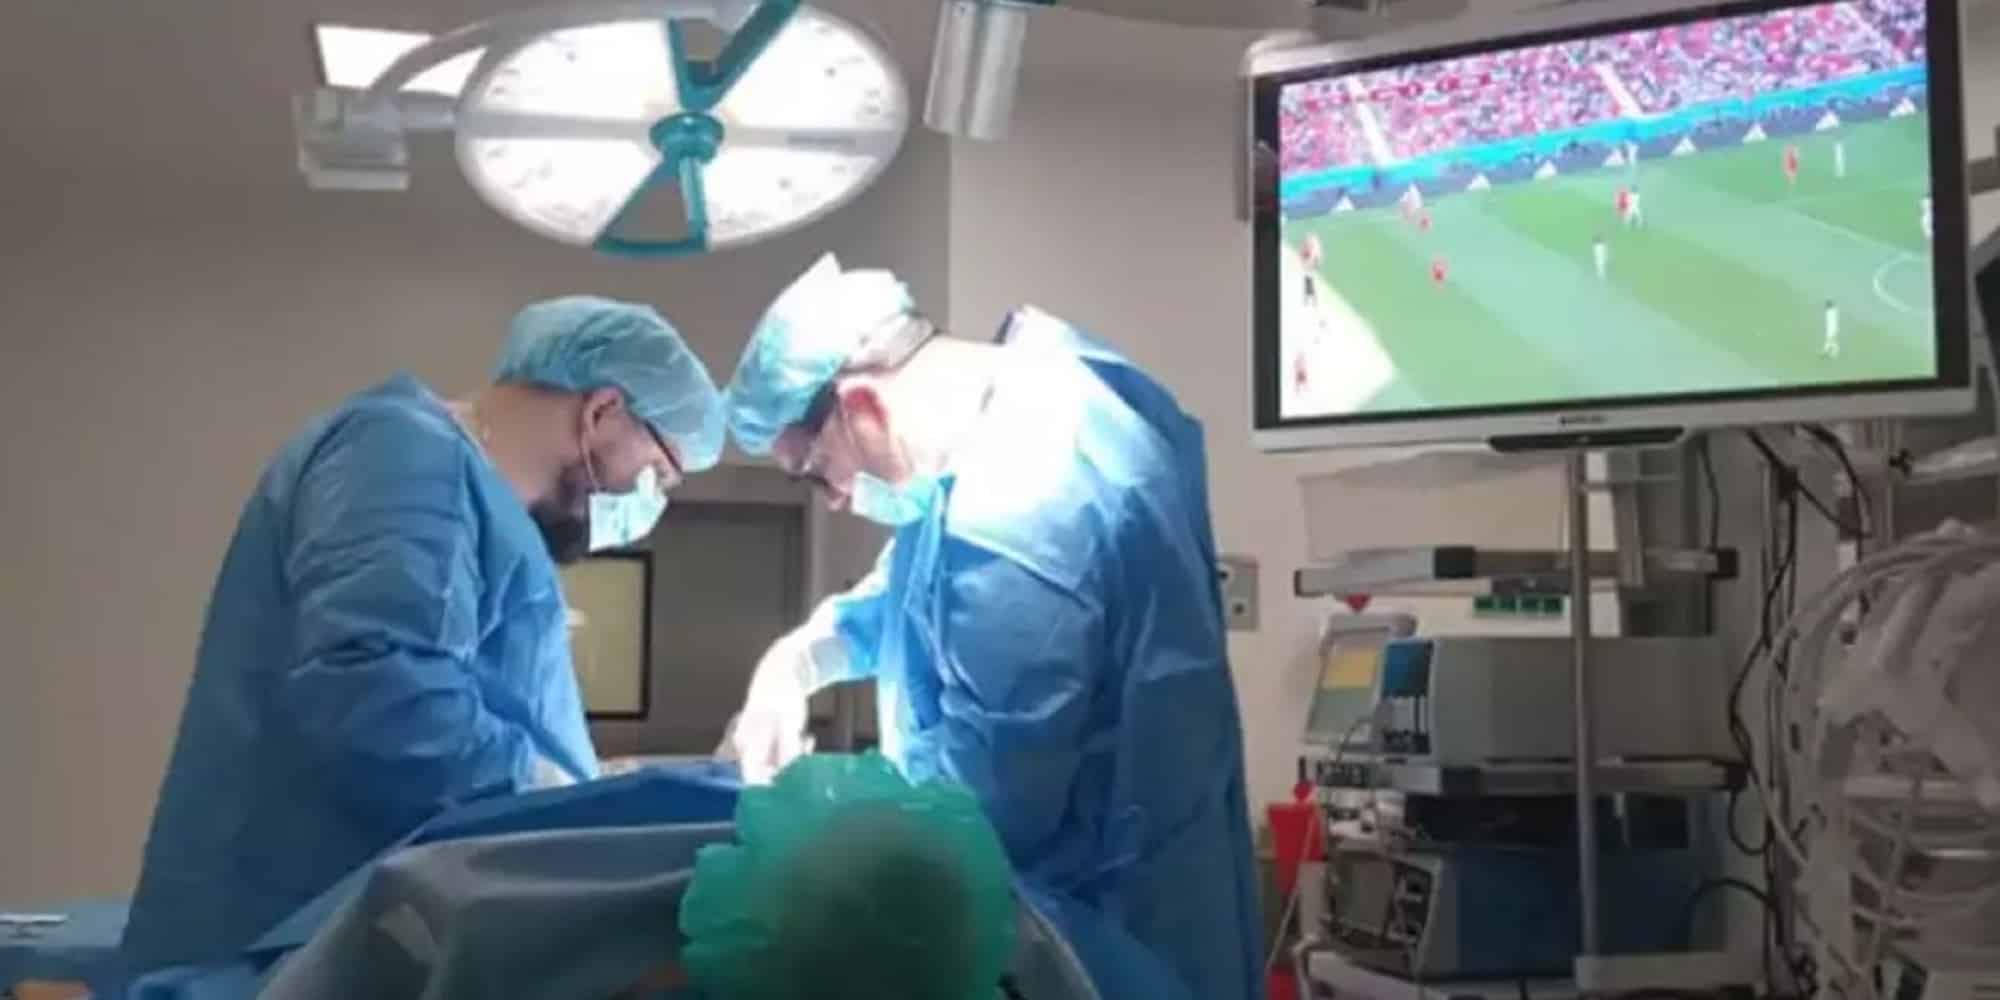 Ασθενής βλέπει αγώνα του Μουντιάλ 2022 την ώρα του χειρουργείου